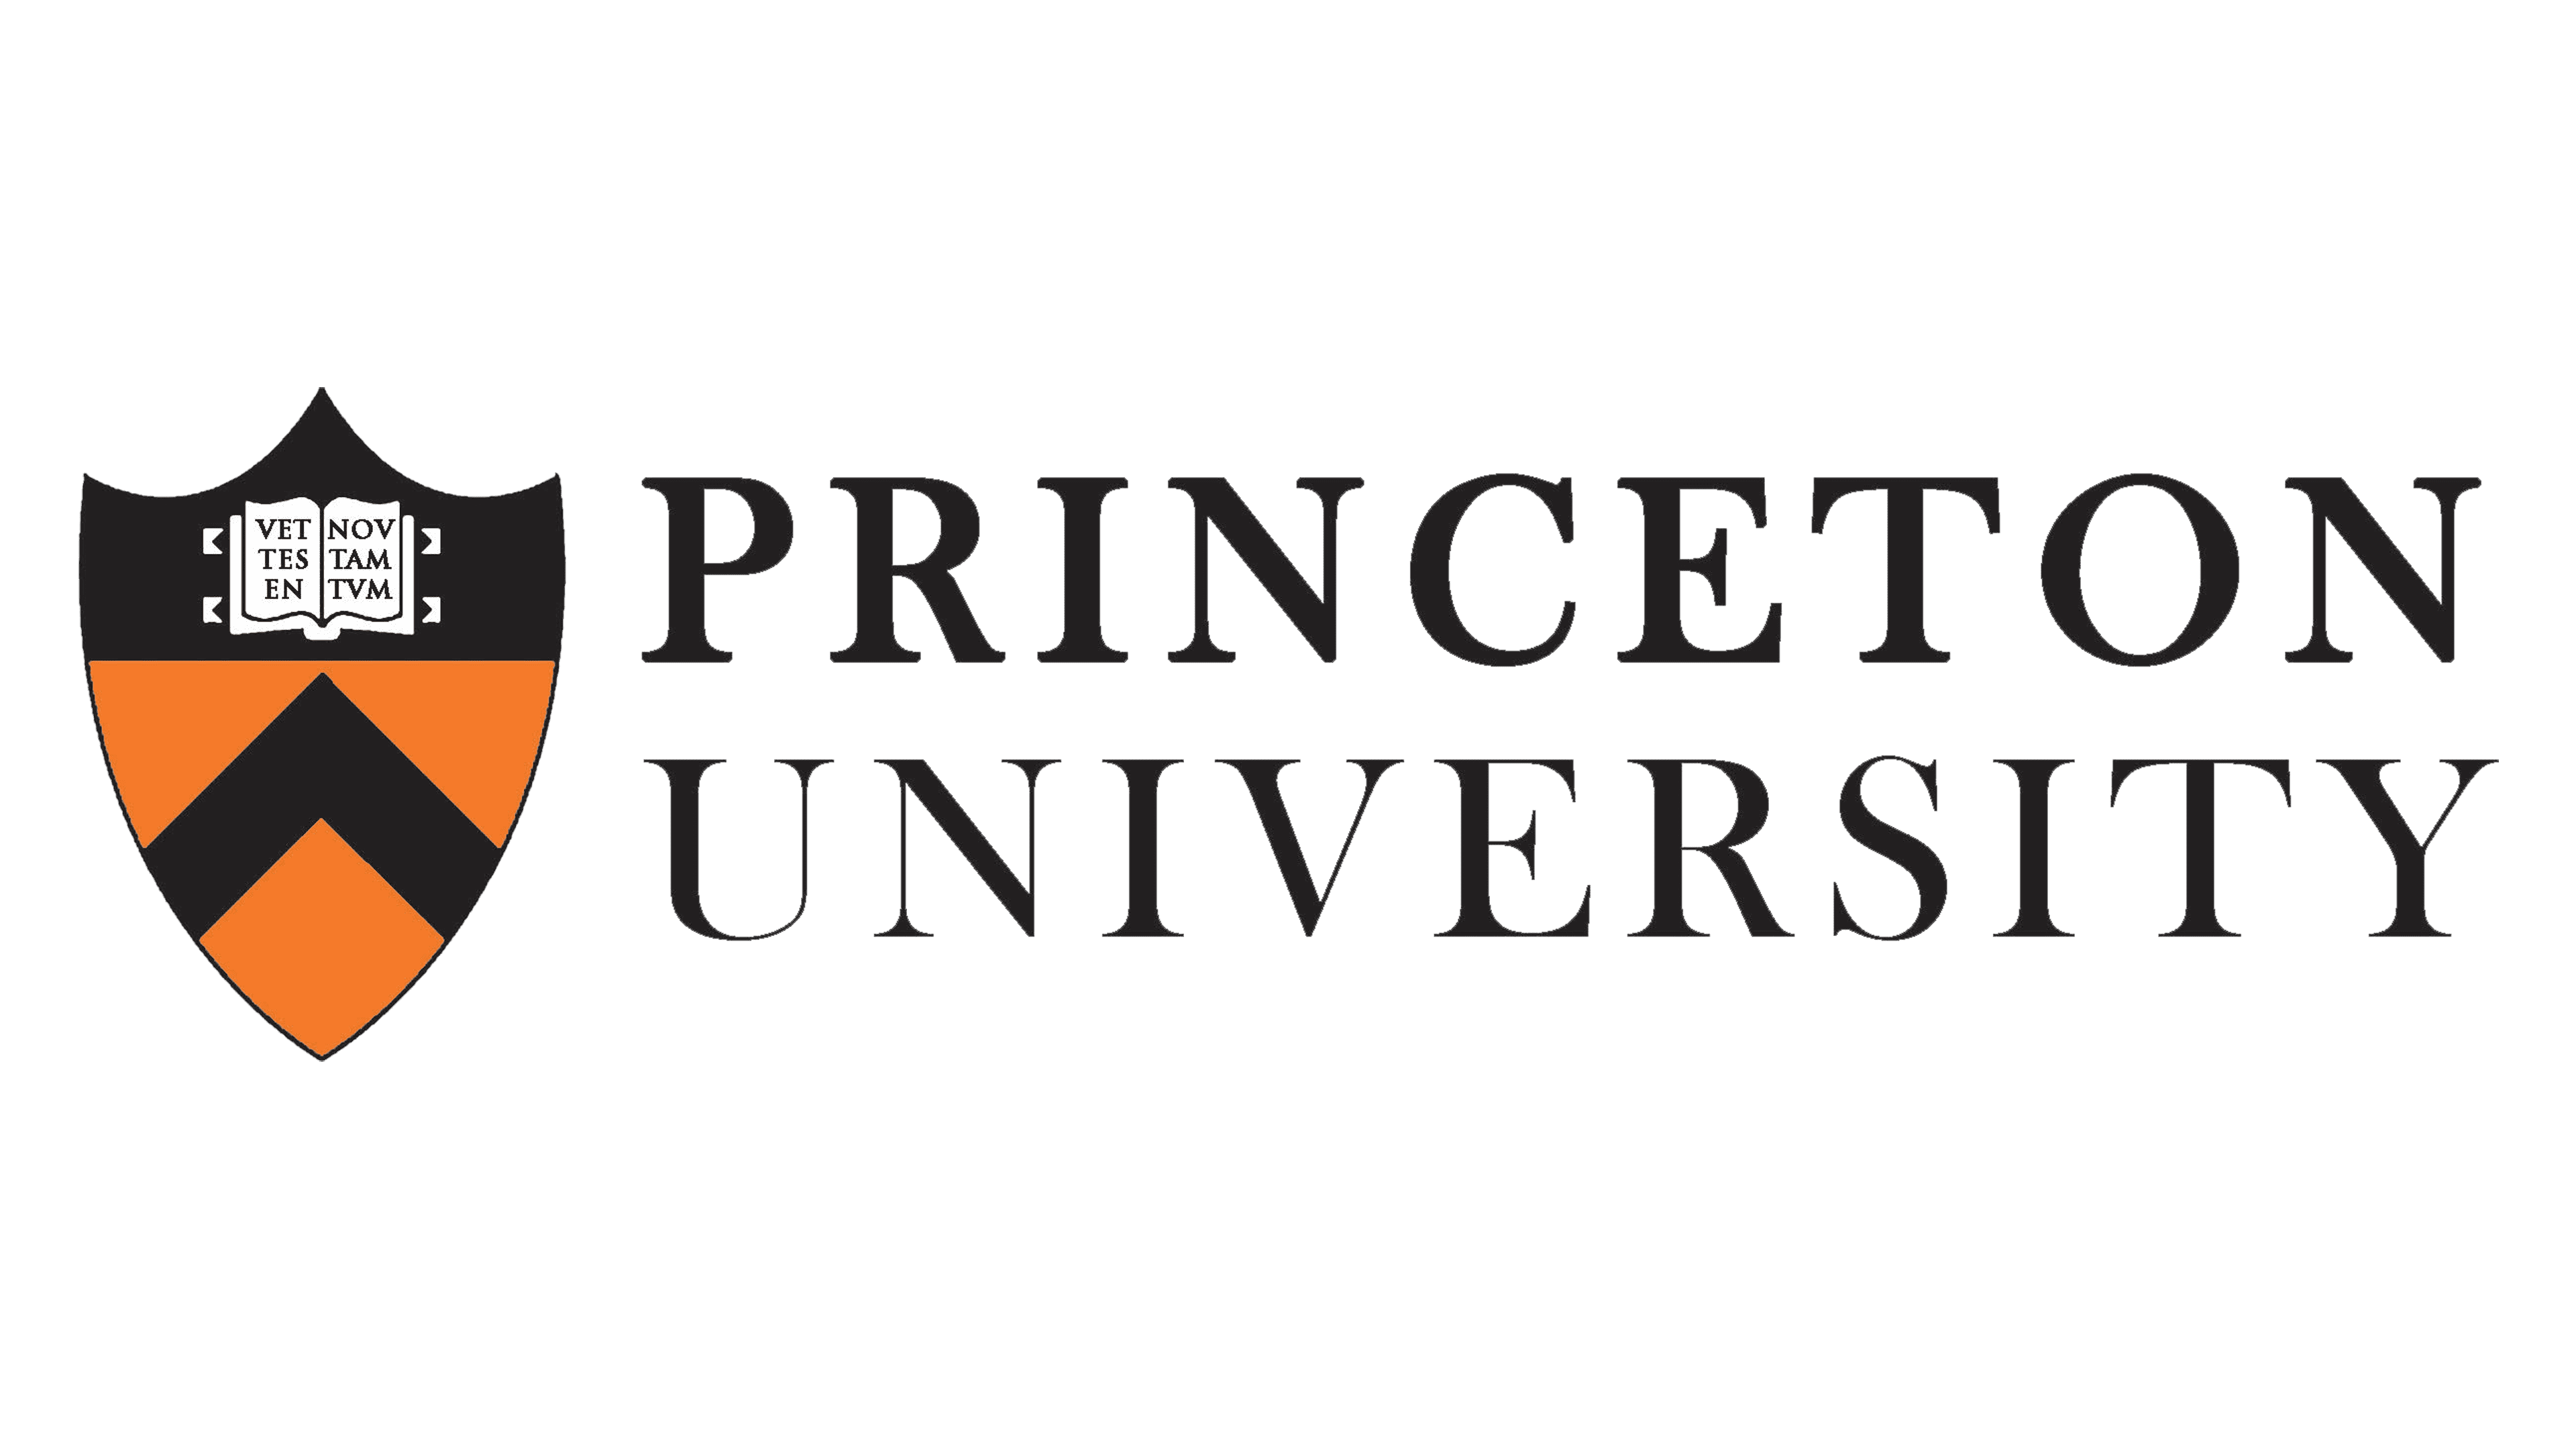 لوگو و نماد دانشگاه پرینستون، معنی، تاریخچه، PNG، نام تجاری